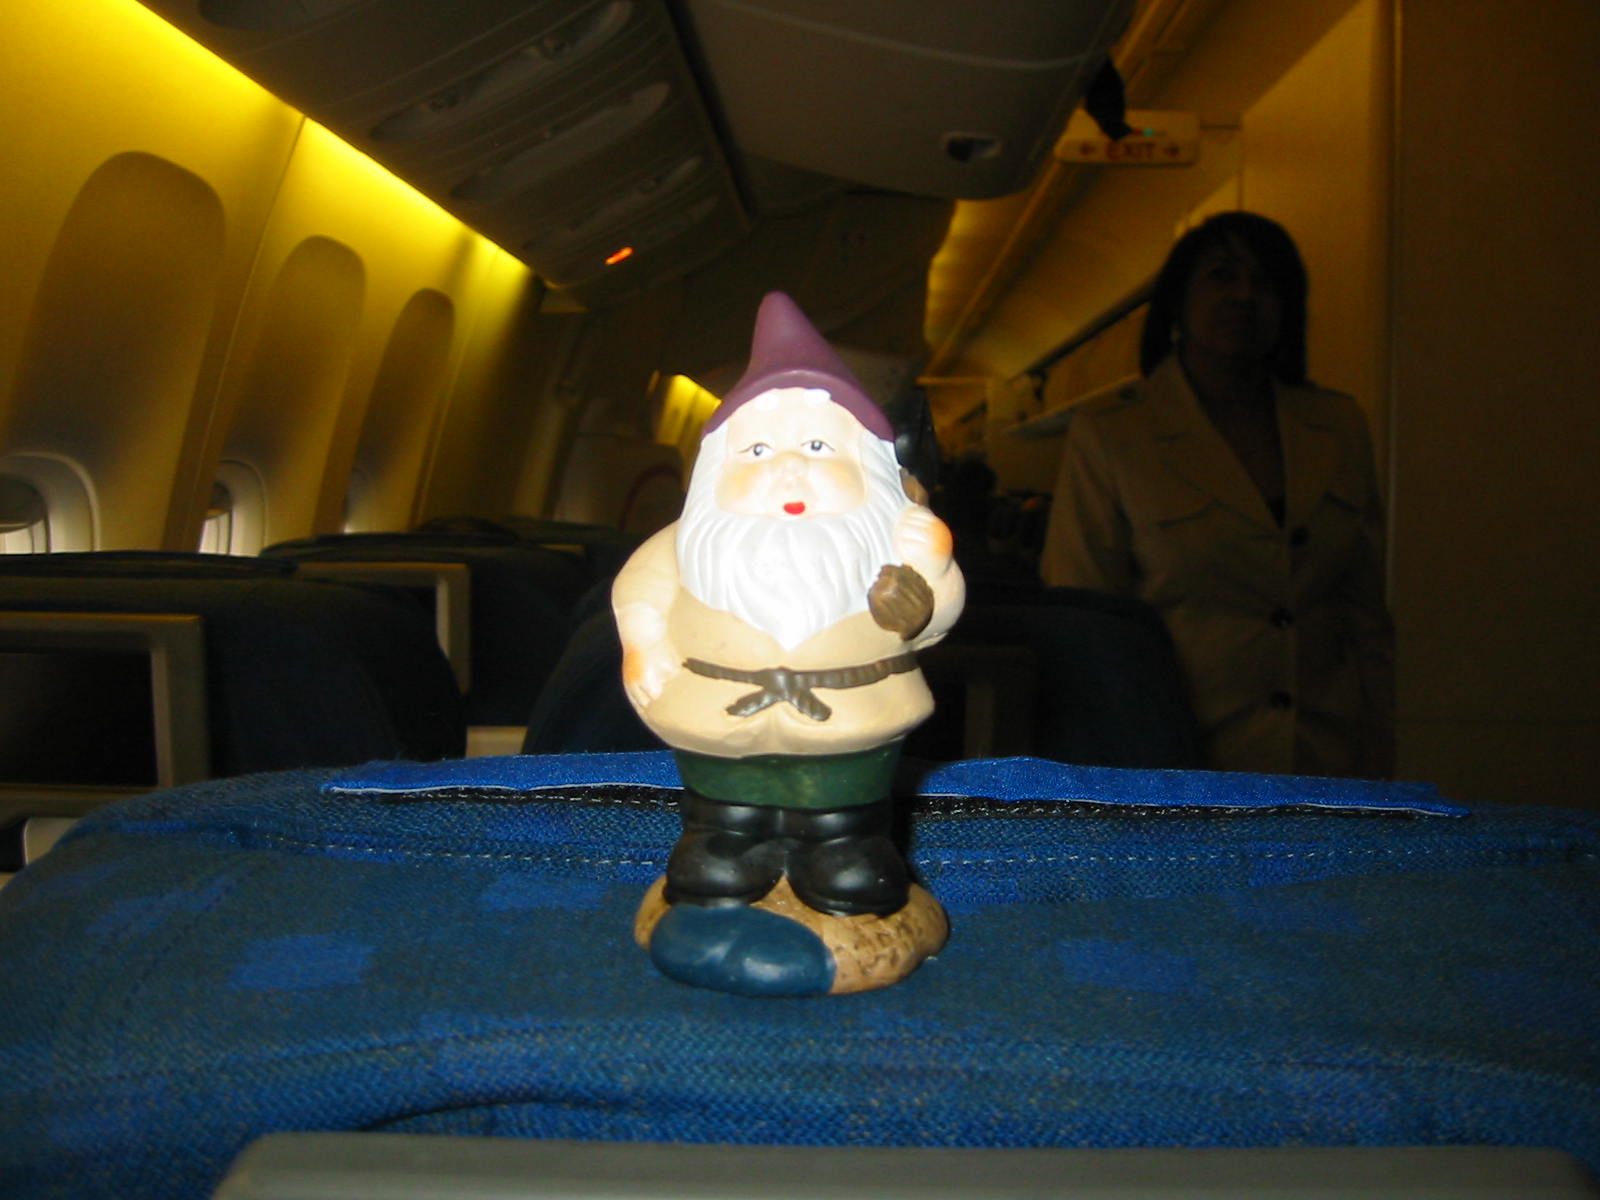 http://1.bp.blogspot.com/_e-i4iqimQZs/S8z3Mb6hwRI/AAAAAAAAAK0/Ai2gF9LwuPs/s1600/travelling+gnome.jpg